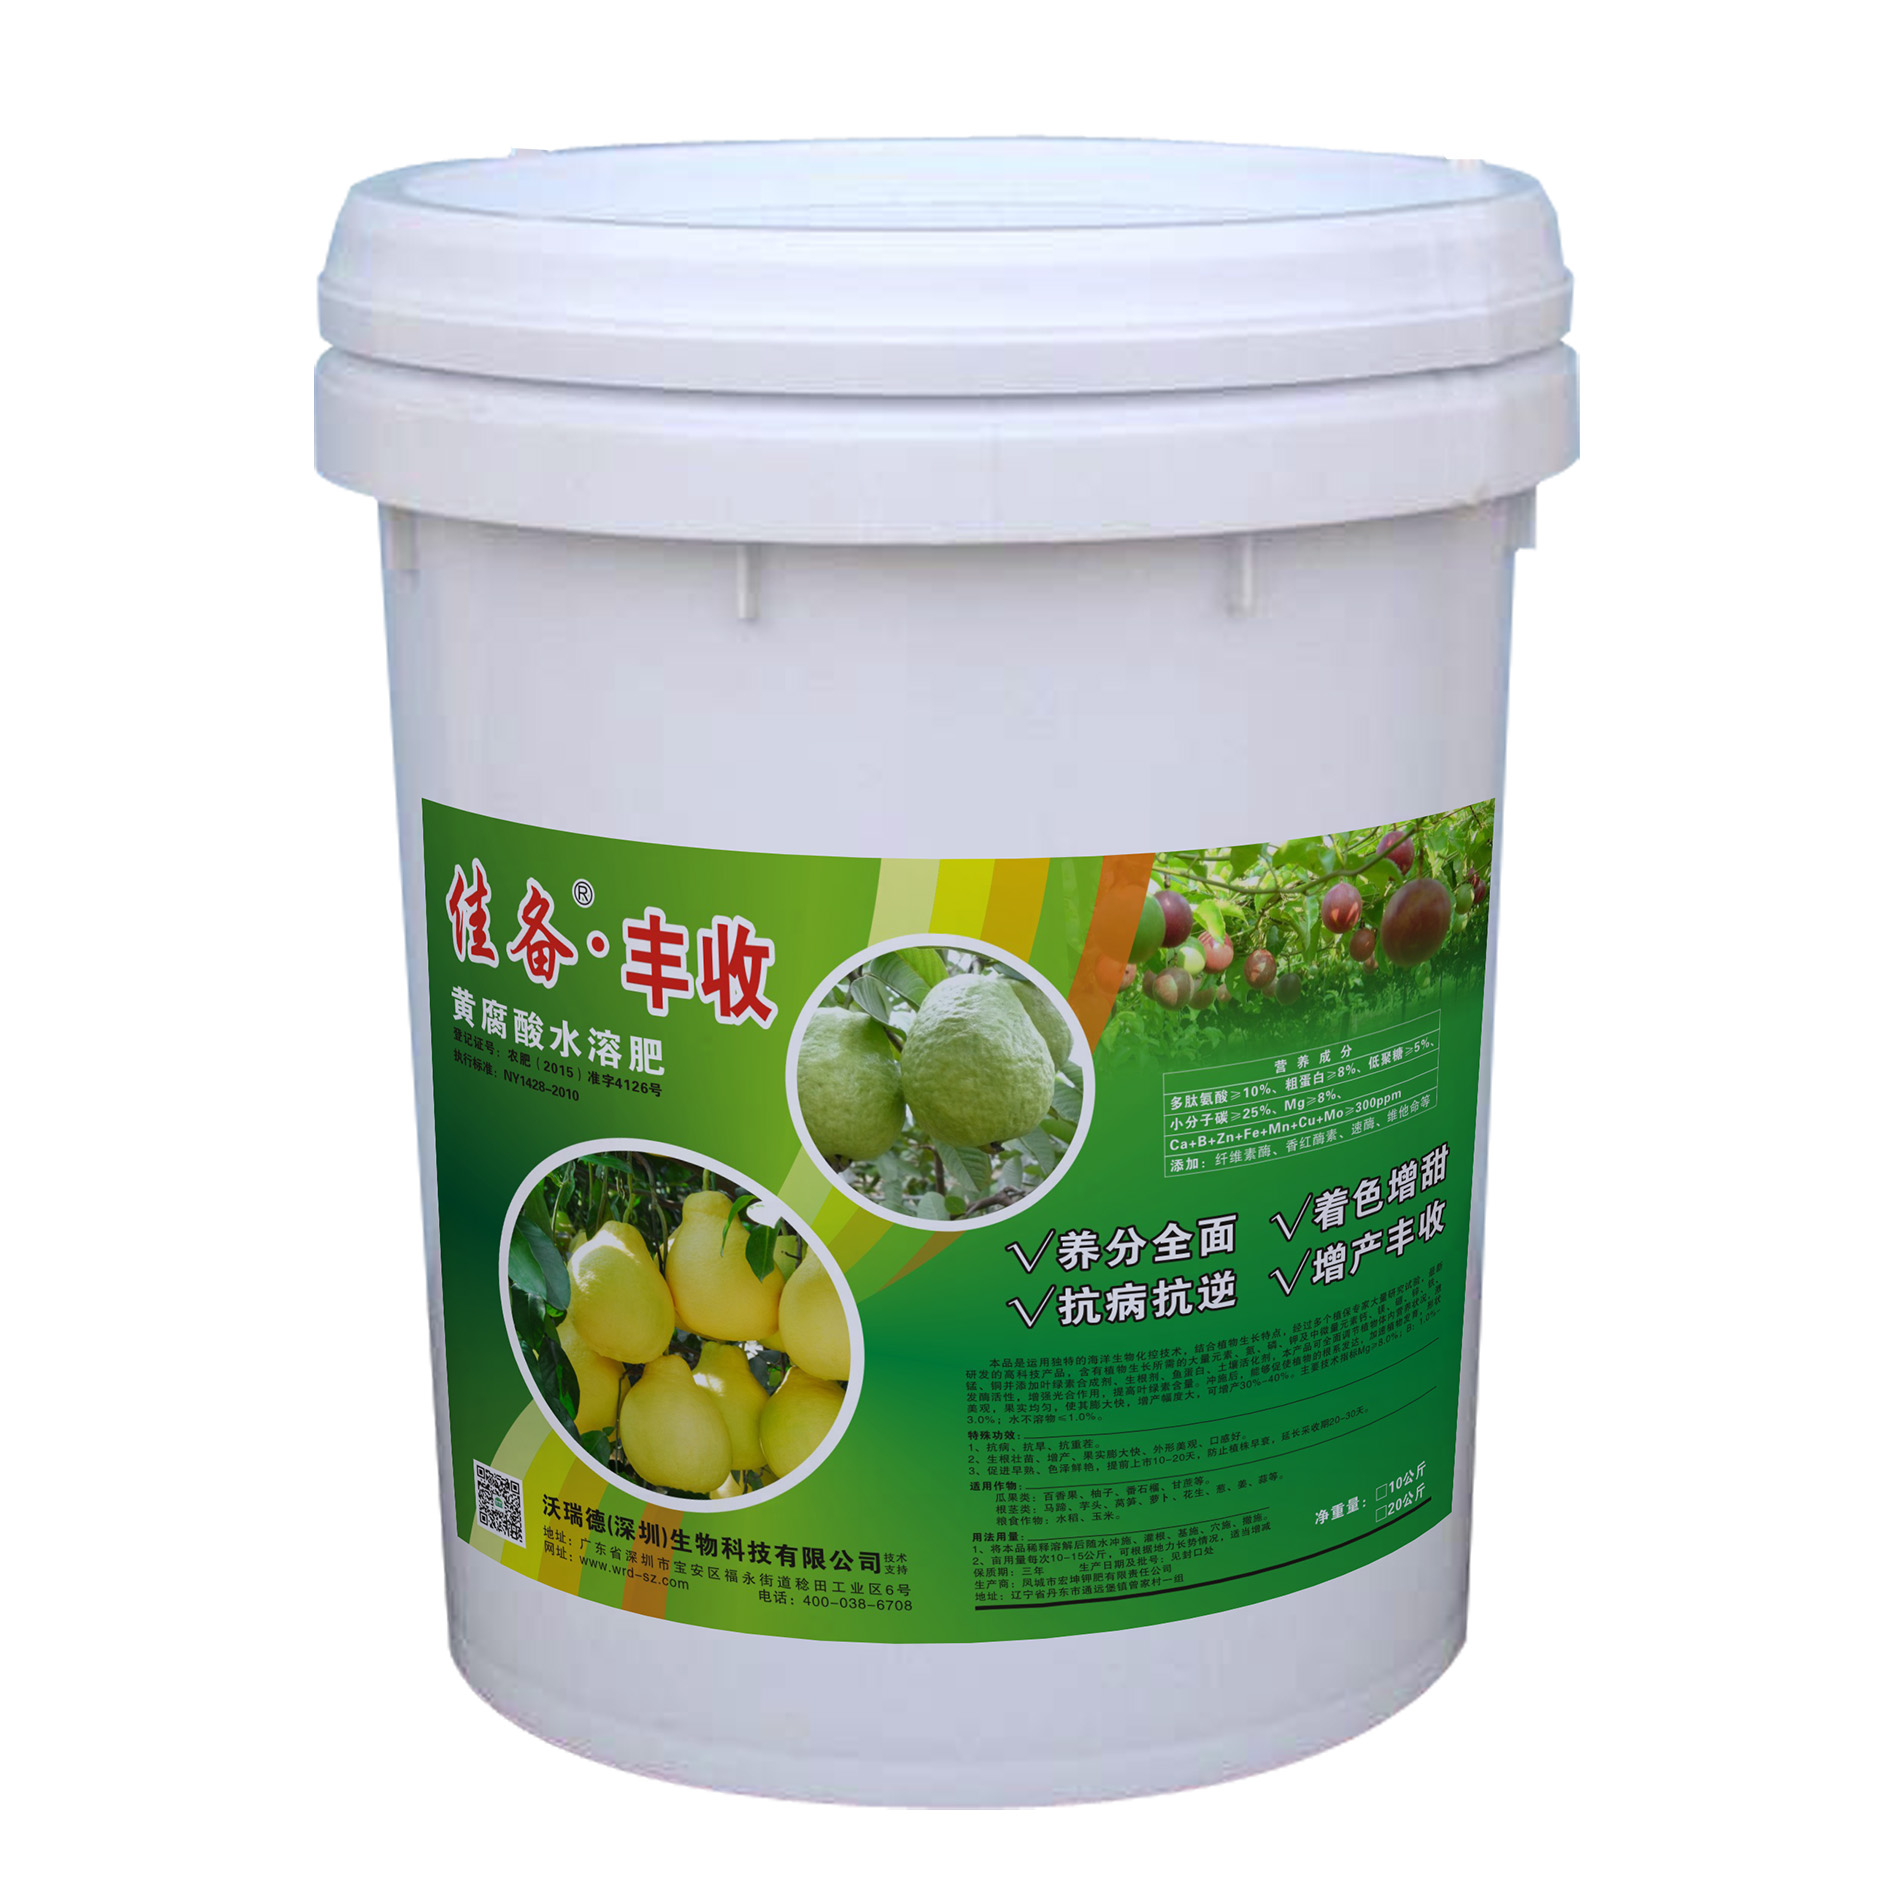 上海佳备·丰收黄腐酸水溶肥